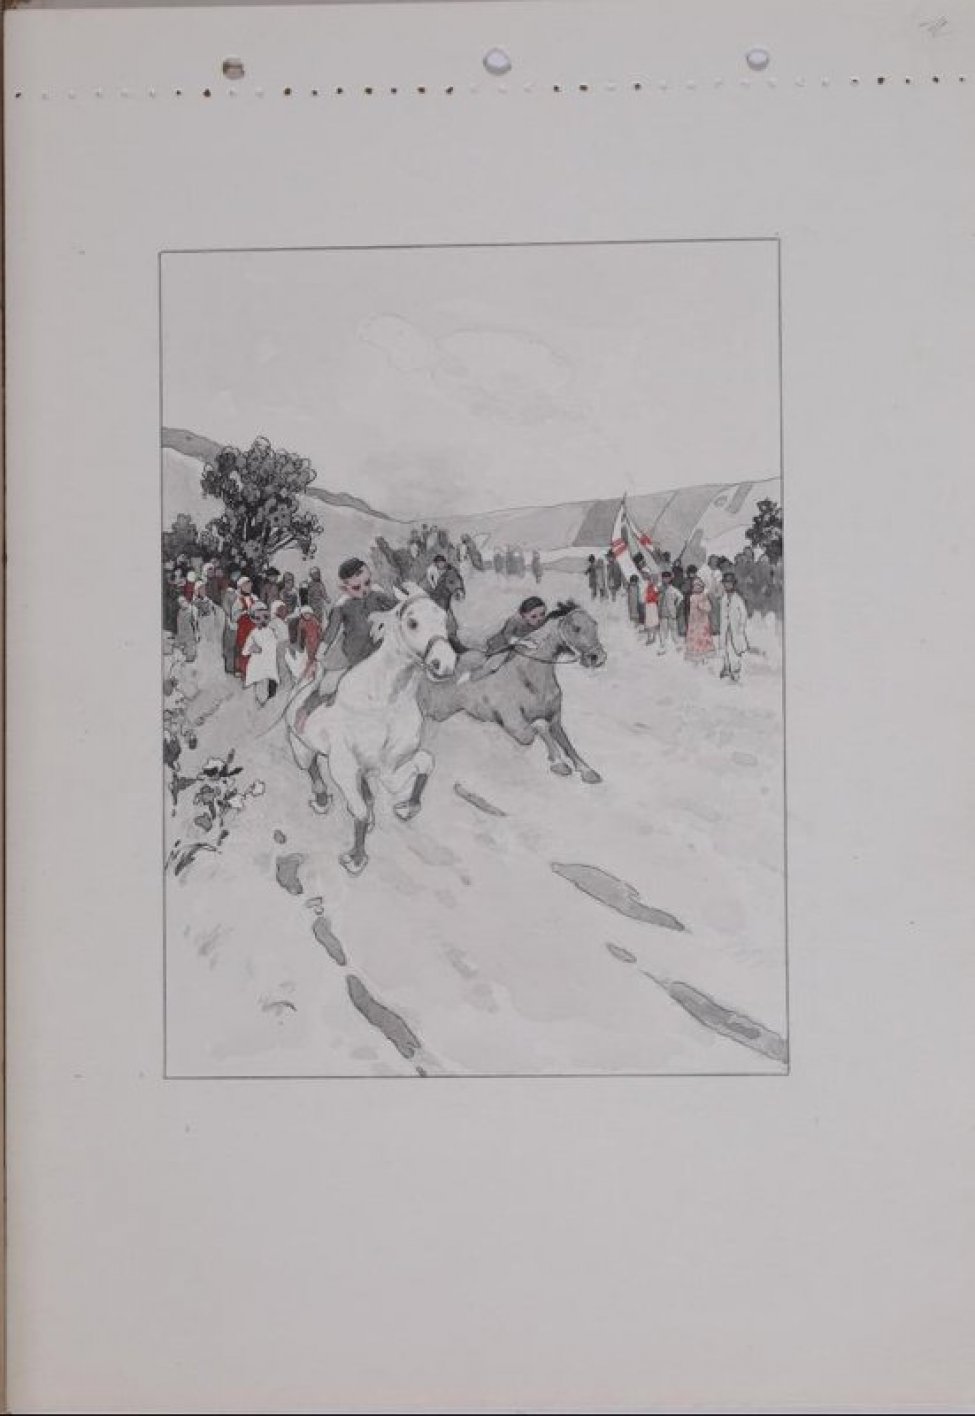 В центре композиции изображены скачущие на конях мальчики, вокруг - группа людей. Изображение заключено в рамку.